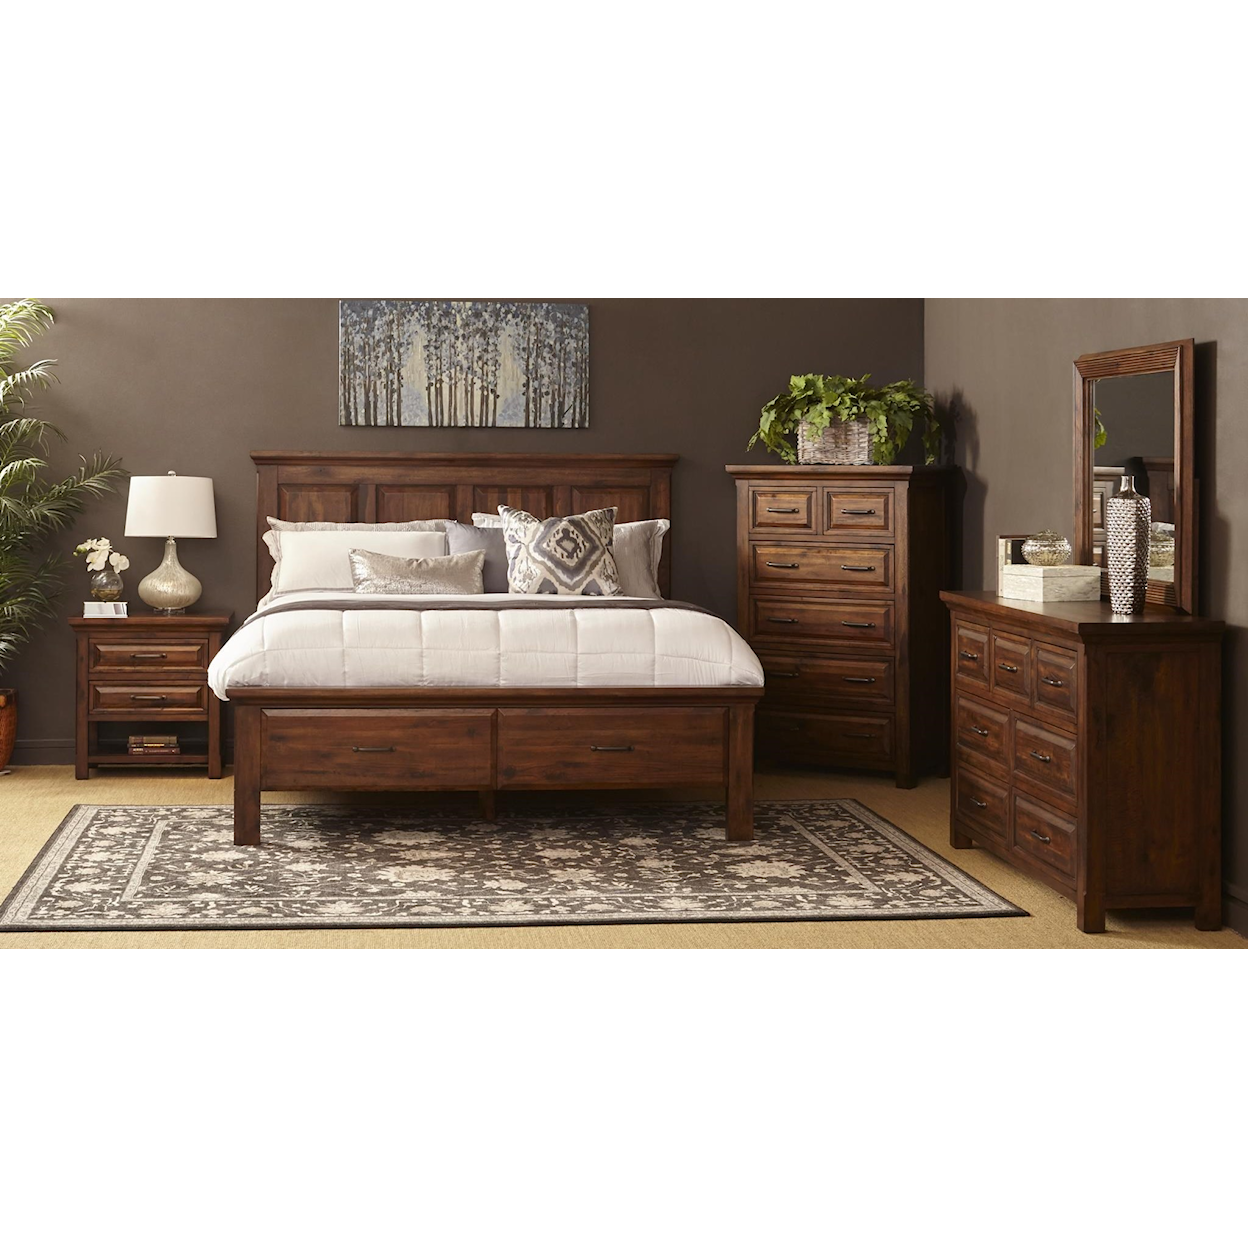 Napa Furniture Design Hill Crest King Bedroom Group